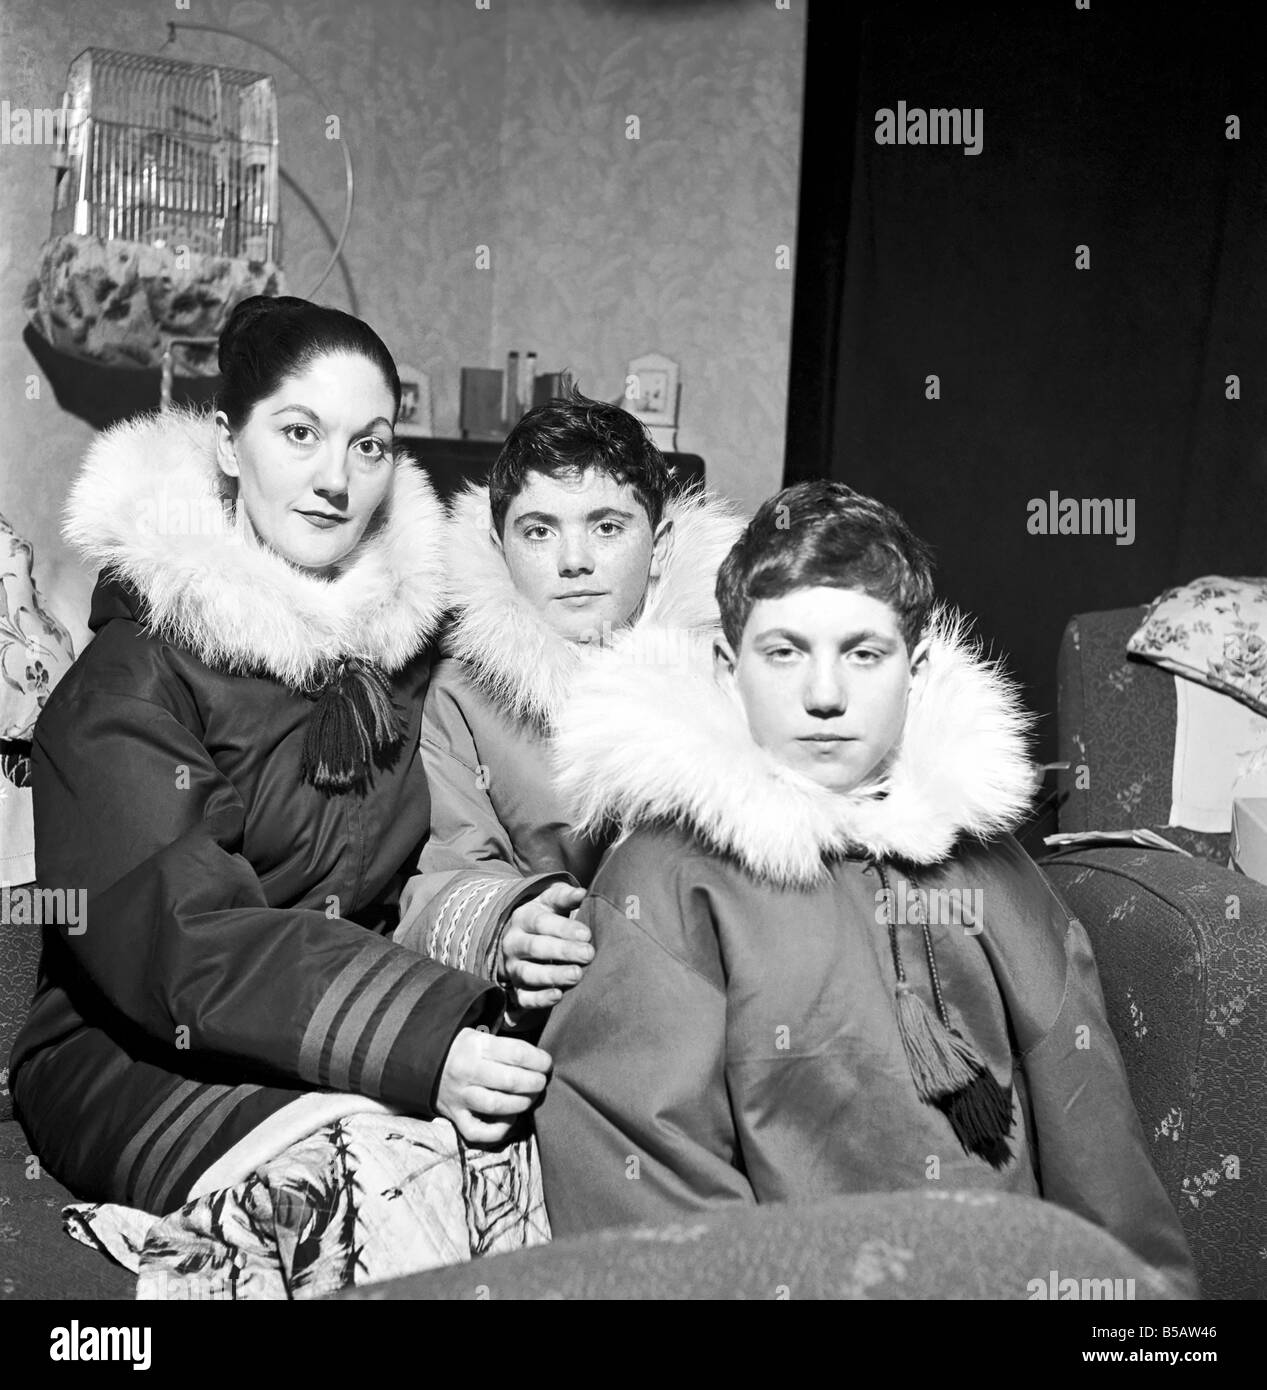 アンダーカ JOHN LAWRENCE SULLIVAN - MAGLIANO 19-20aw Eskimo coat